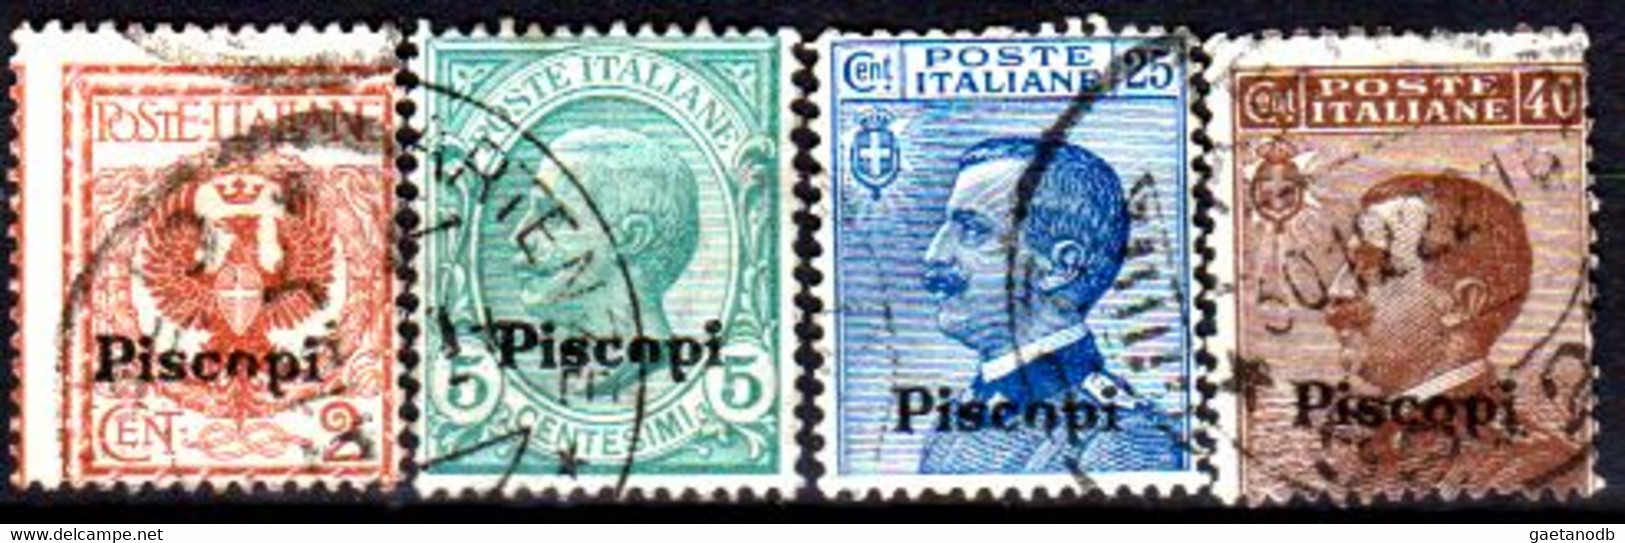 Italia-G 1125 - Colonie Italiane - Egeo: Piscopi 1912 (o) Used - Qualità A Vostro Giudizio. - Egée (Piscopi)